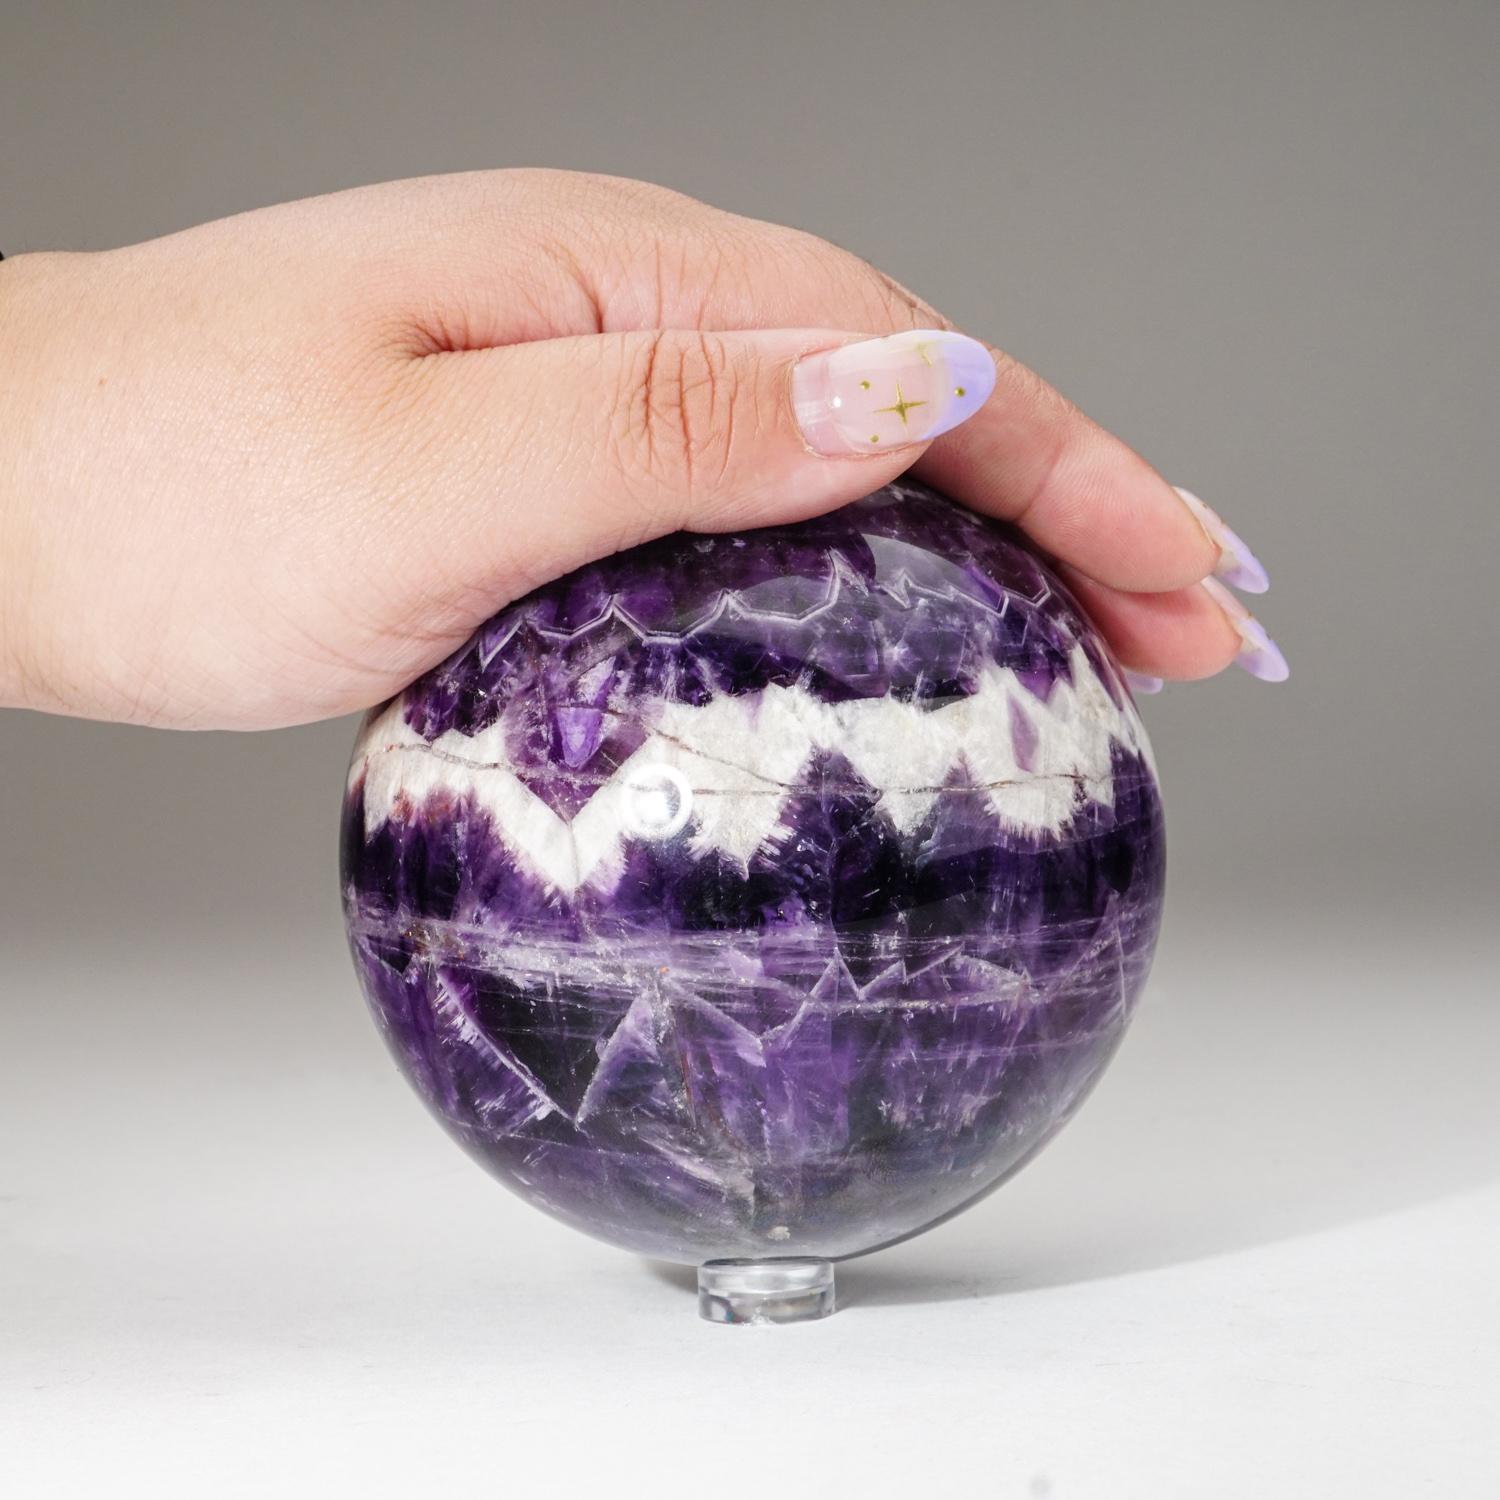 Sphère d'améthyste chevron de première qualité, polie, de couleur violet vif et de clarté translucide à transparente. L'améthyste chevron est une combinaison d'améthyste et de quartz blanc, mélangés ensemble dans un motif de bandes ou de rayures en